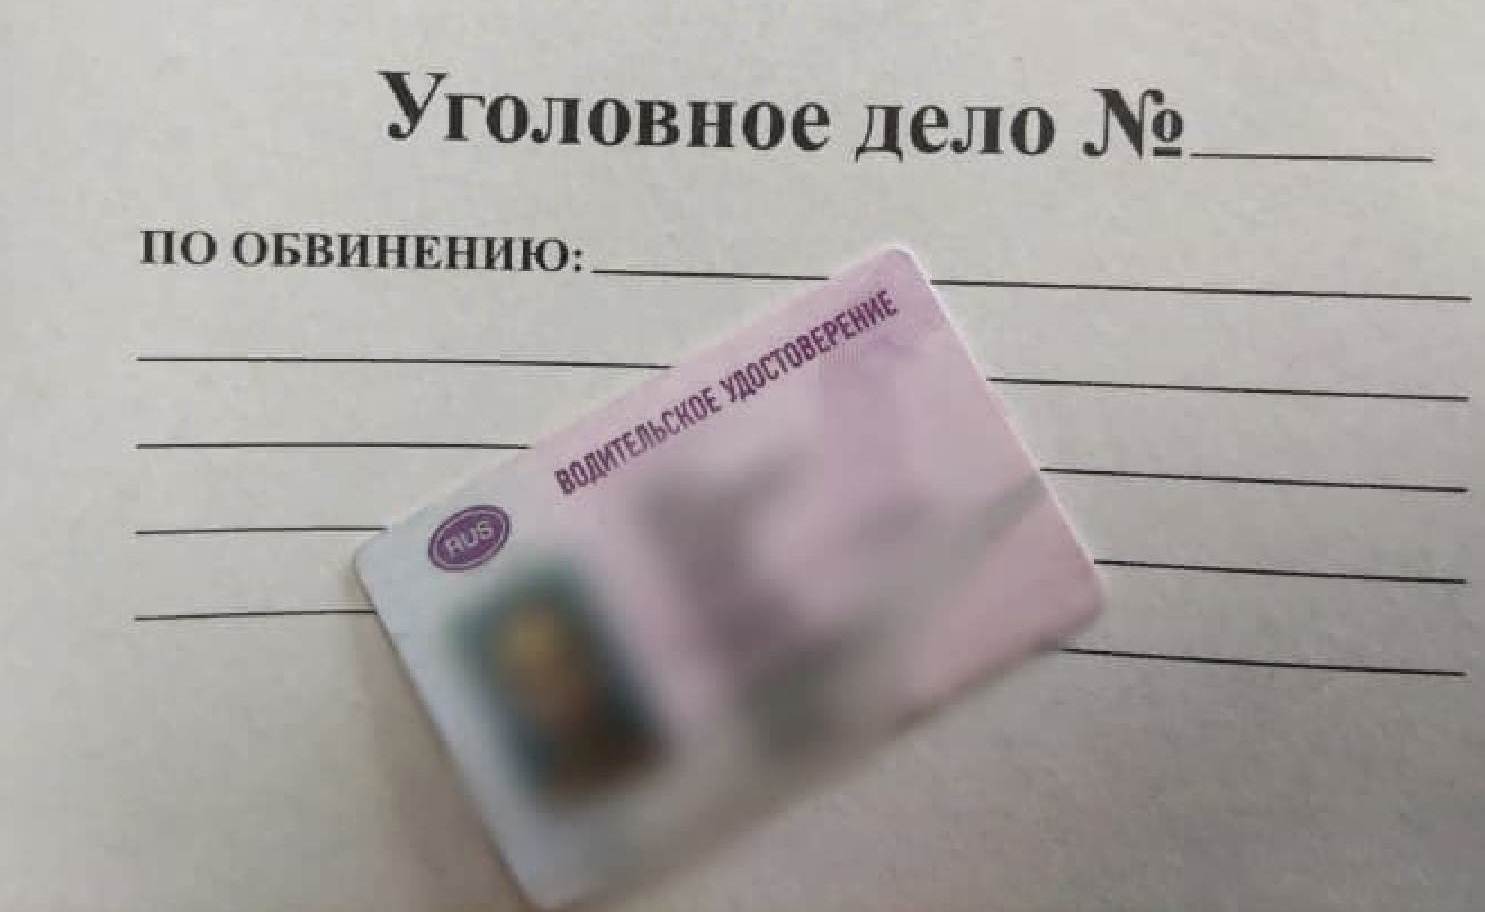 Сотрудники ДПС задержали в Костроме жителя ближнего зарубежья с фальшивыми правами